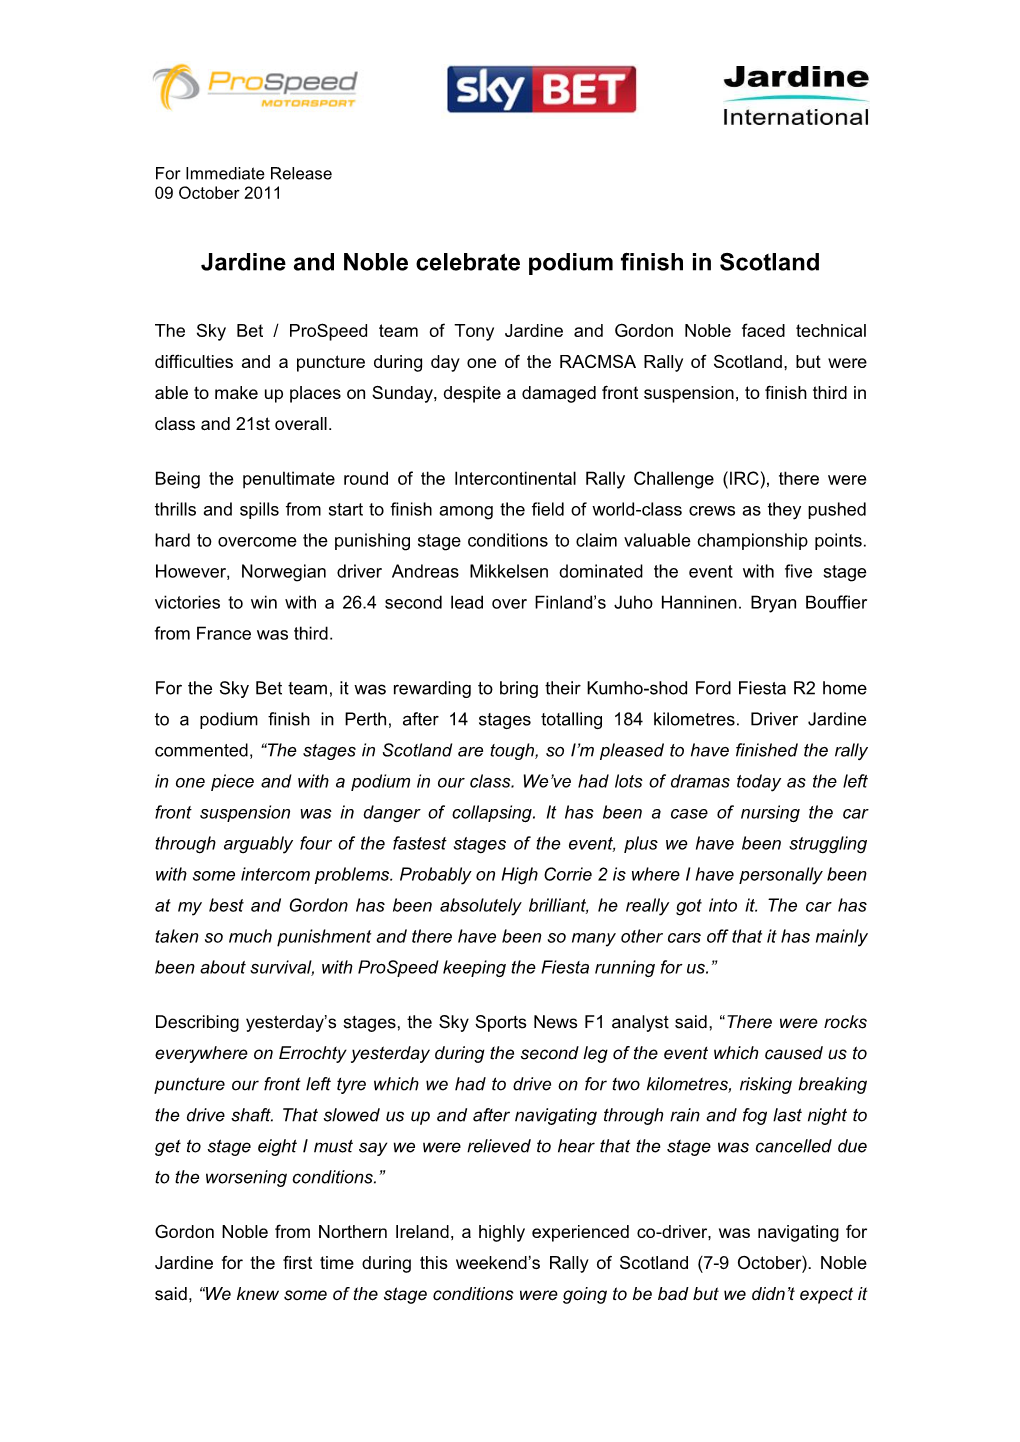 Jardine and Noble Celebrate Podium Finish in Scotland